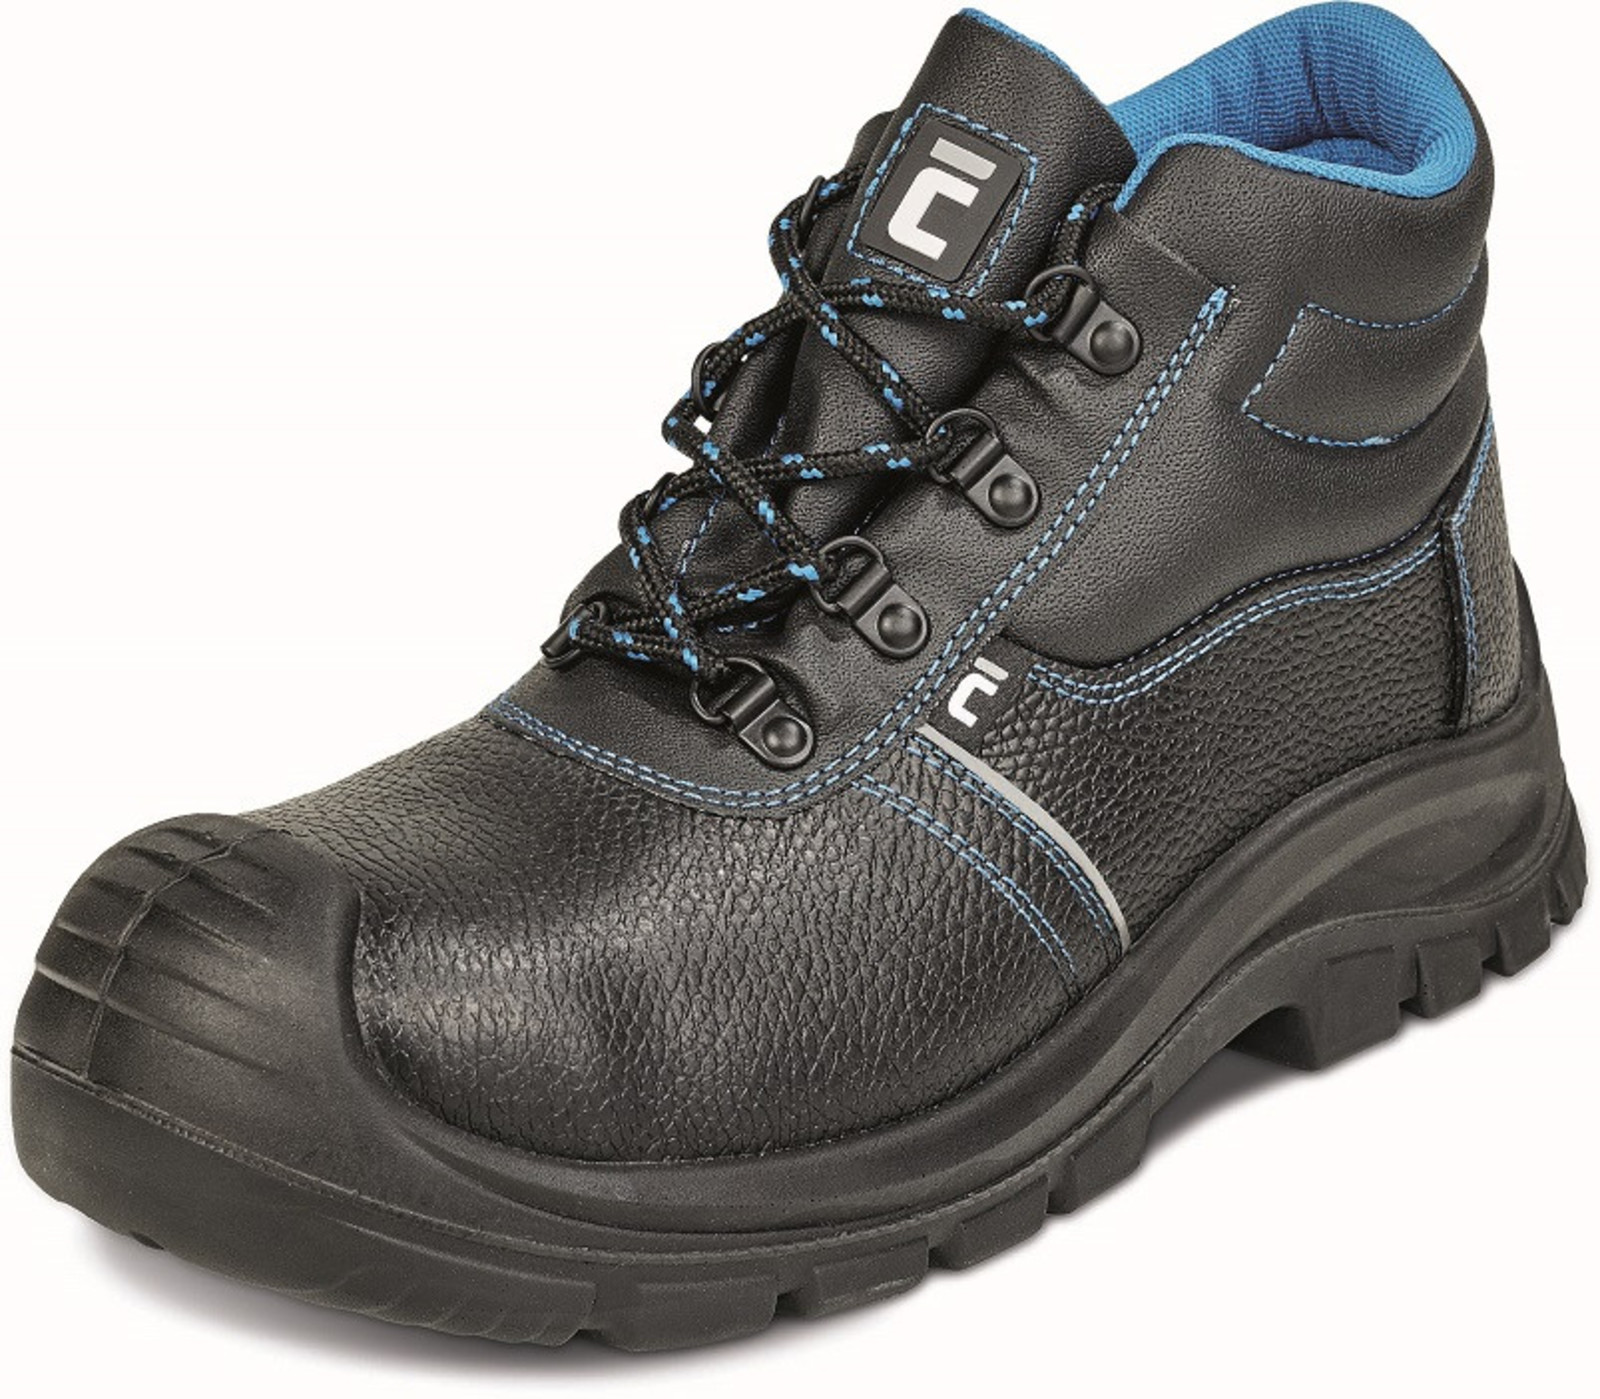 Bezpečnostná obuv Raven XT S3 - veľkosť: 42, farba: čierna